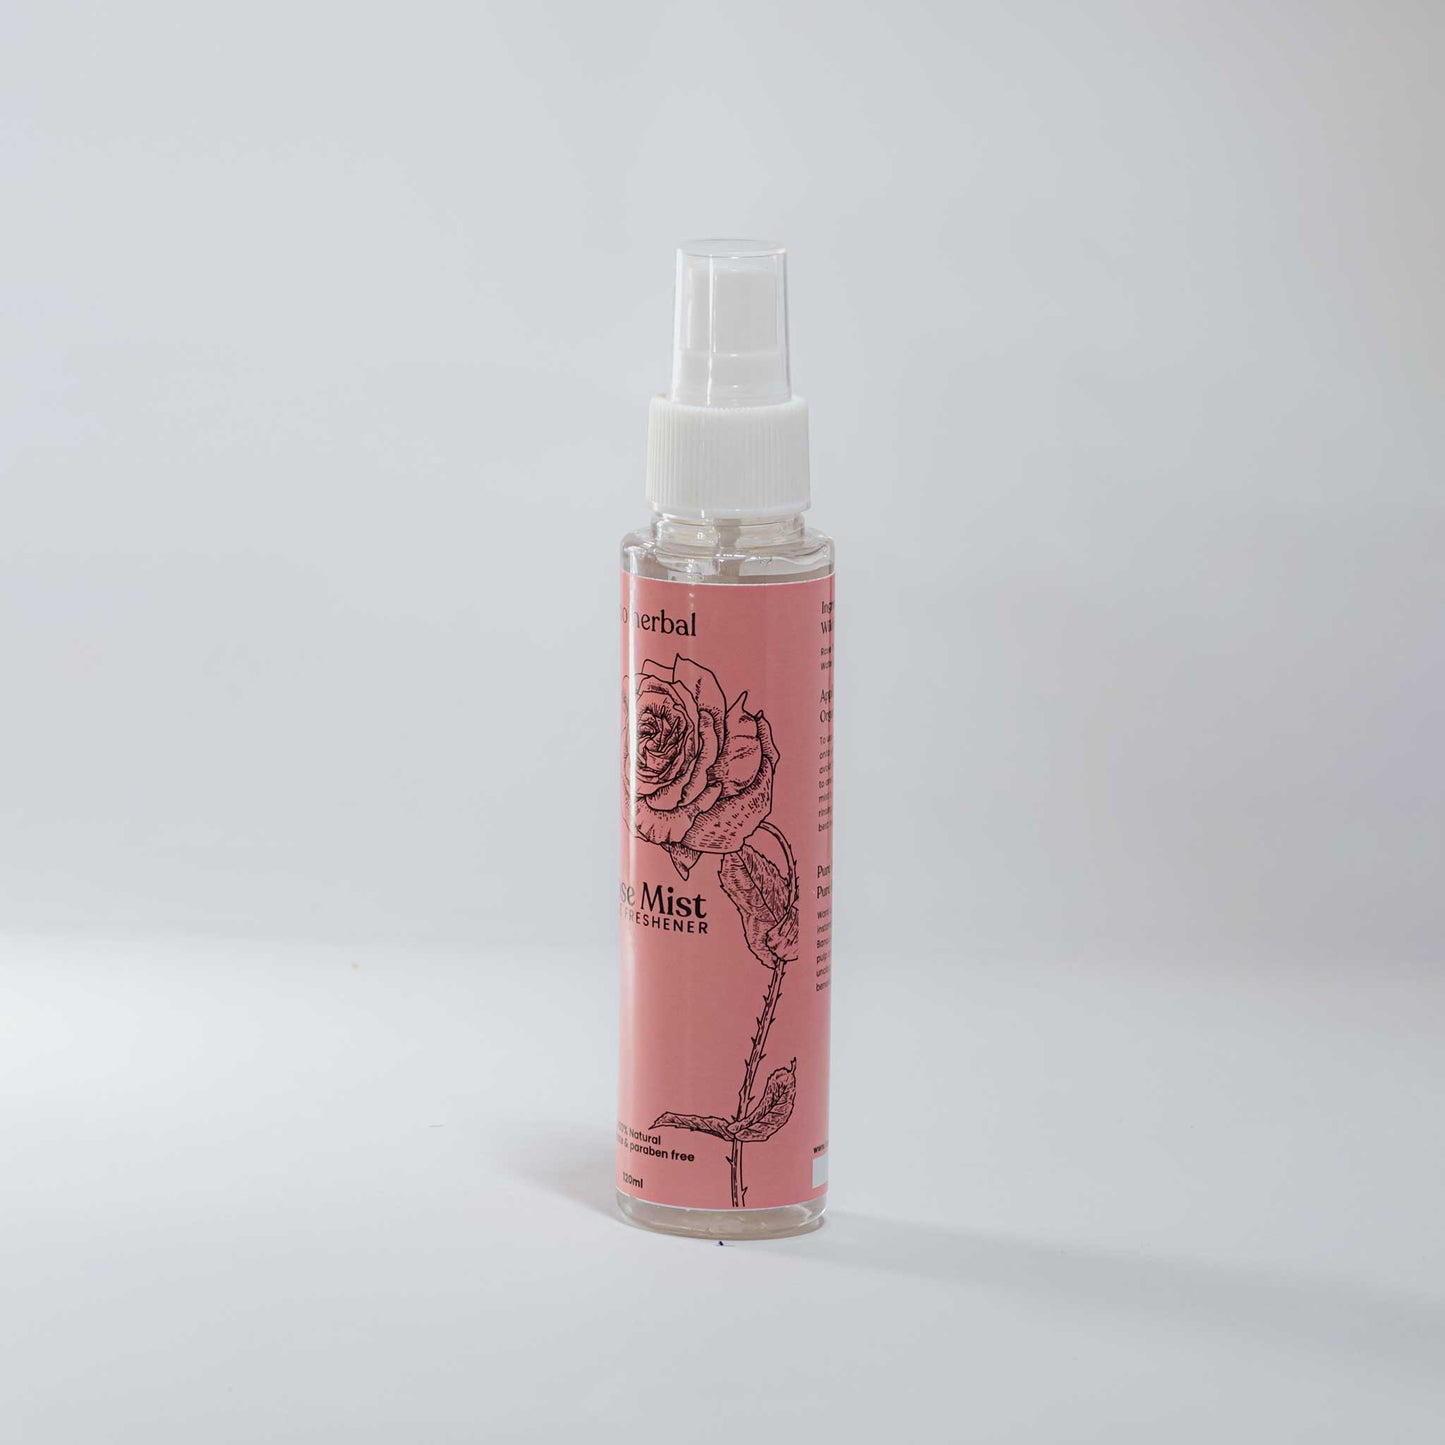 Rose Mist- Face Freshener